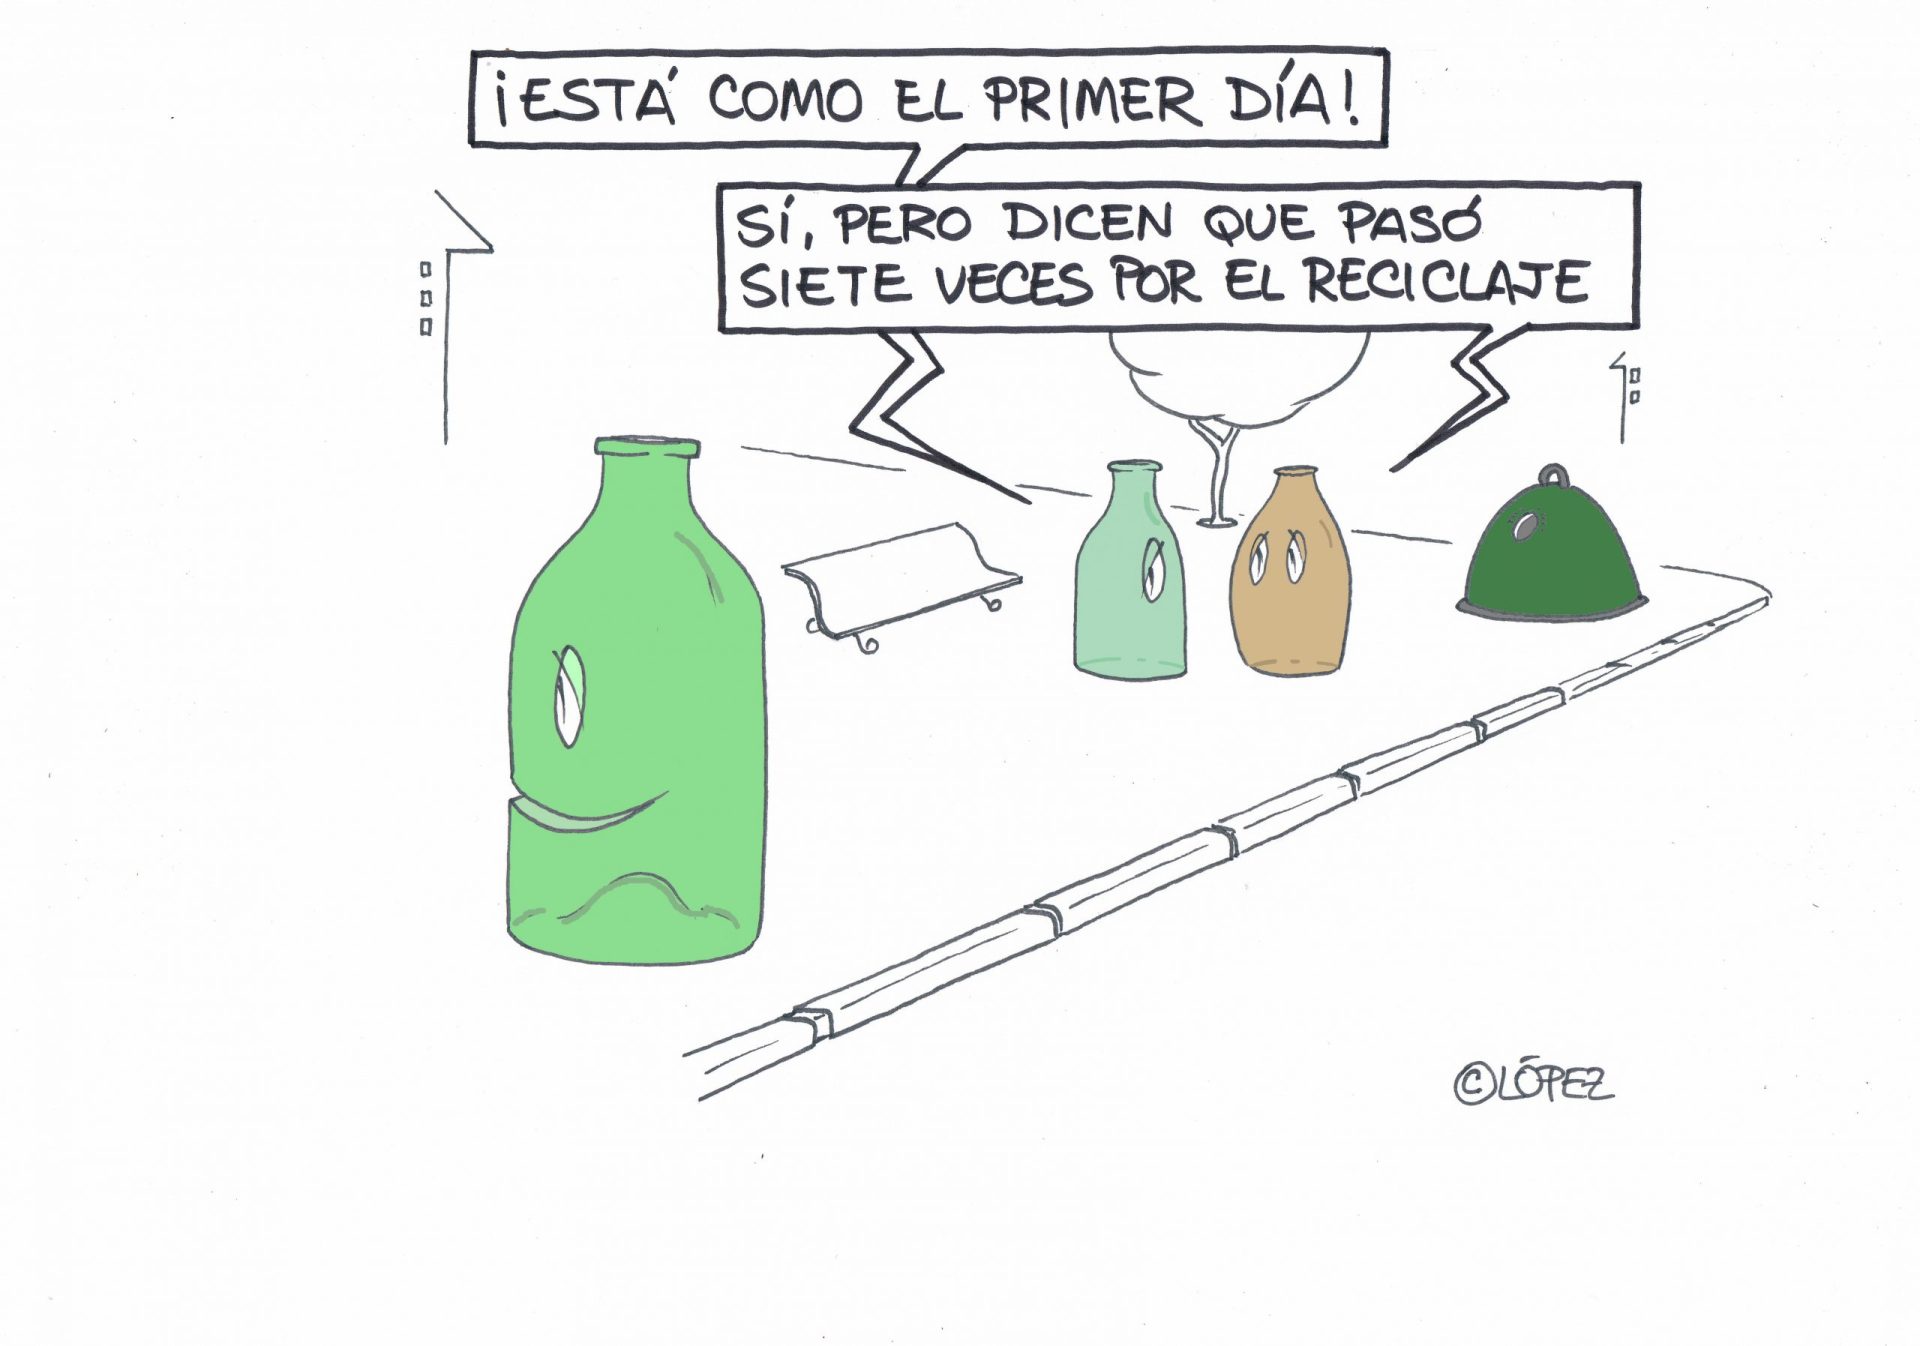 Cómo el primer día. Ecohumor por López. Una iniciativa de Ecovidrio y EFEverde de la Agencia EFE. Esta ilustración puede ser reproducida libremente citando las fuentes.